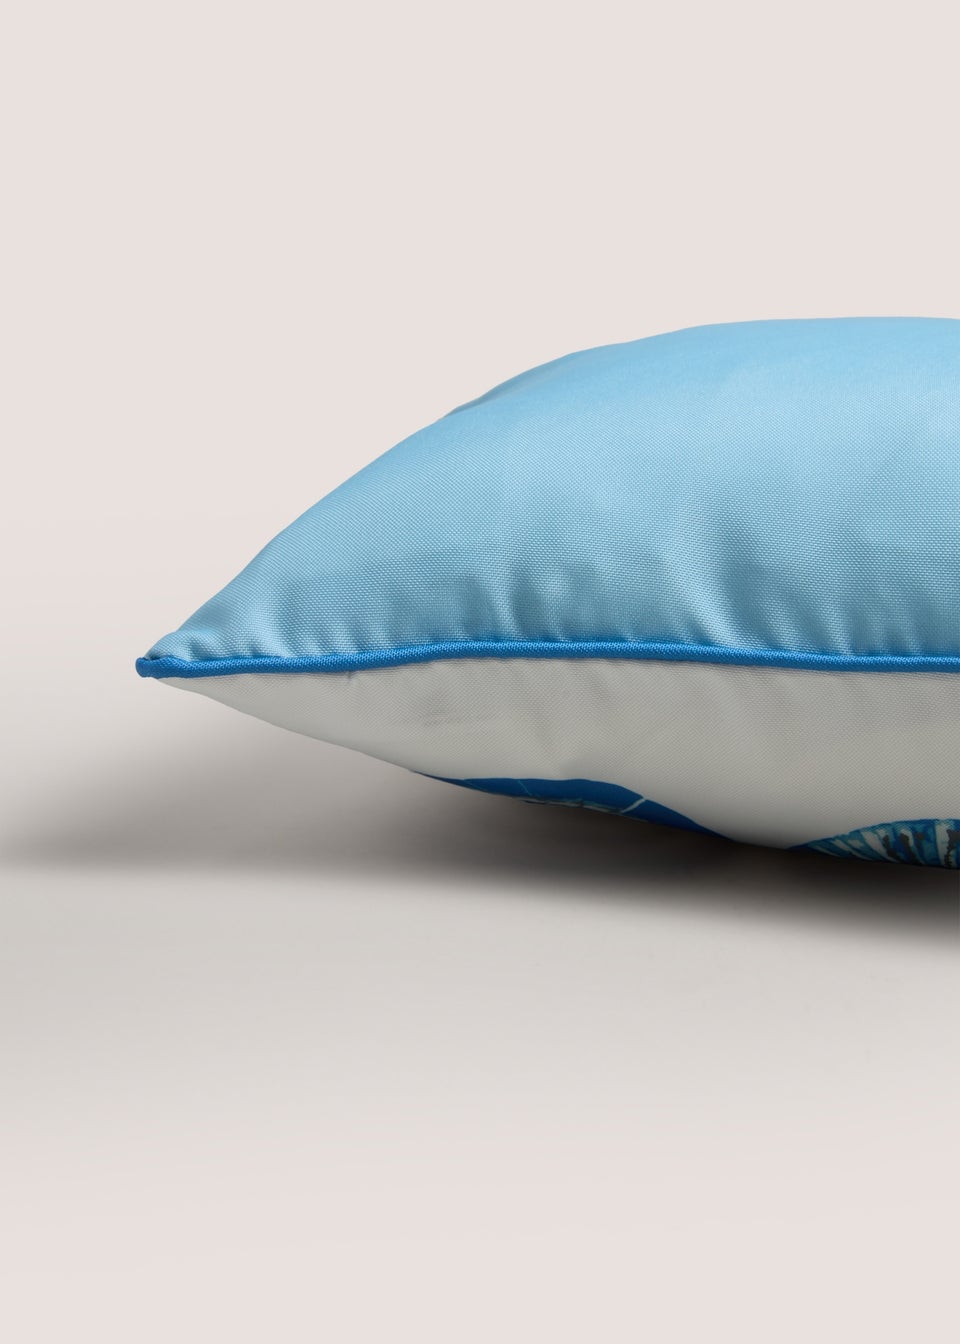 Outdoor Blue Foil Shell Print Cushion (43cm x 43cm)